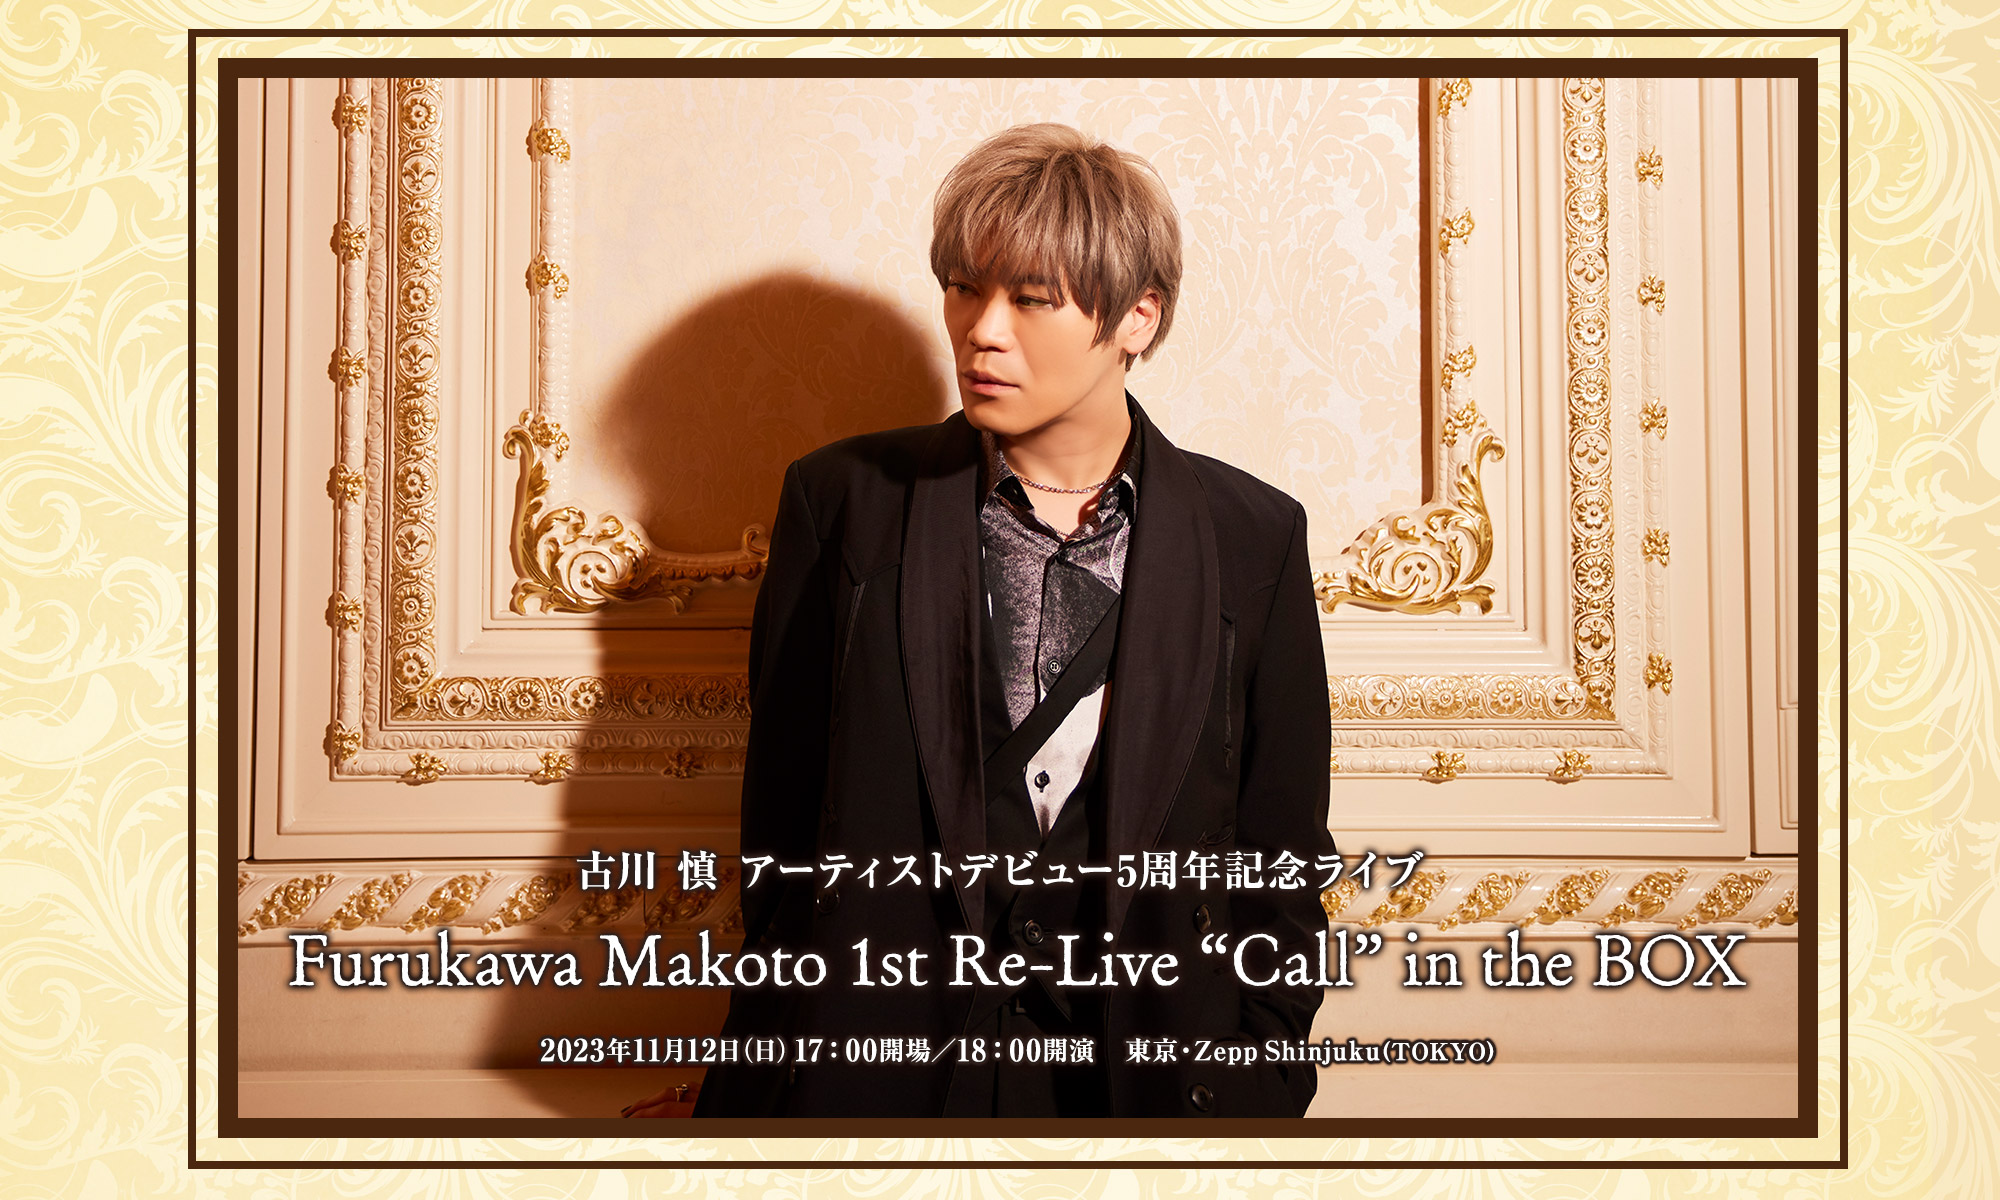 古川 慎 Furukawa Makoto 1st Re-Live Call in the BOX